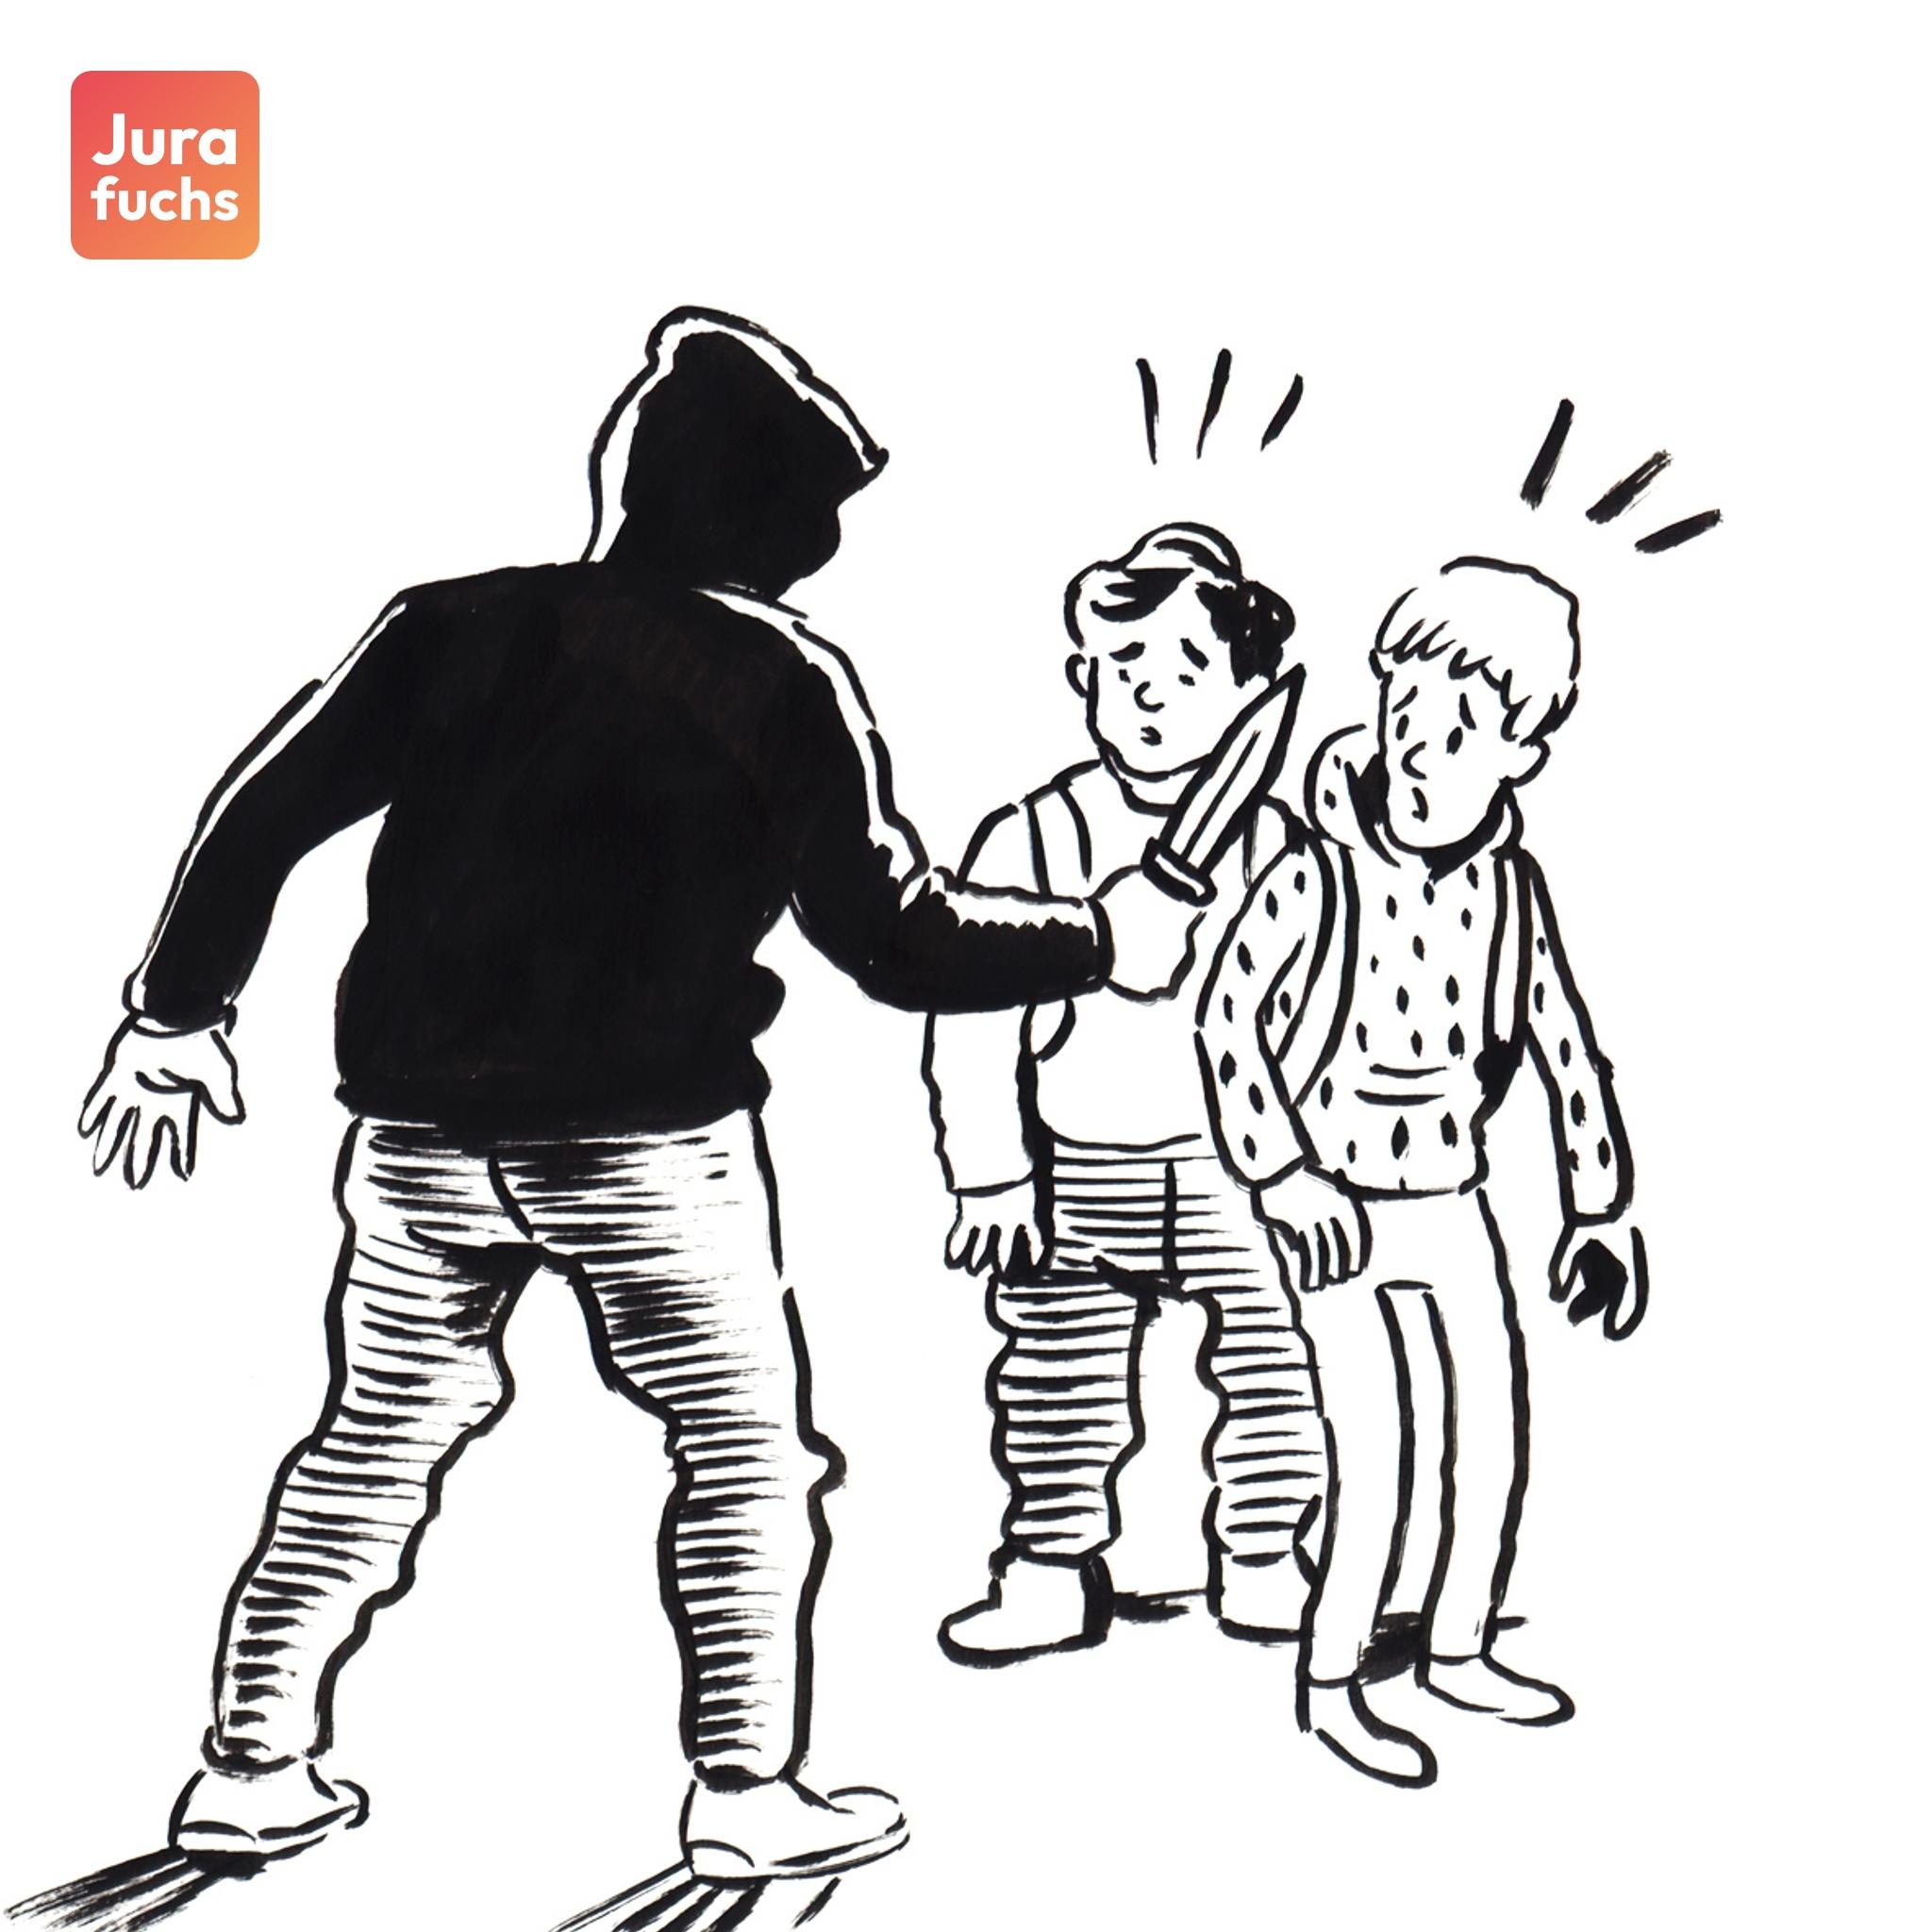 Jurafuchs Illustration: T bedroht zwei Kinder mit einem Messer.